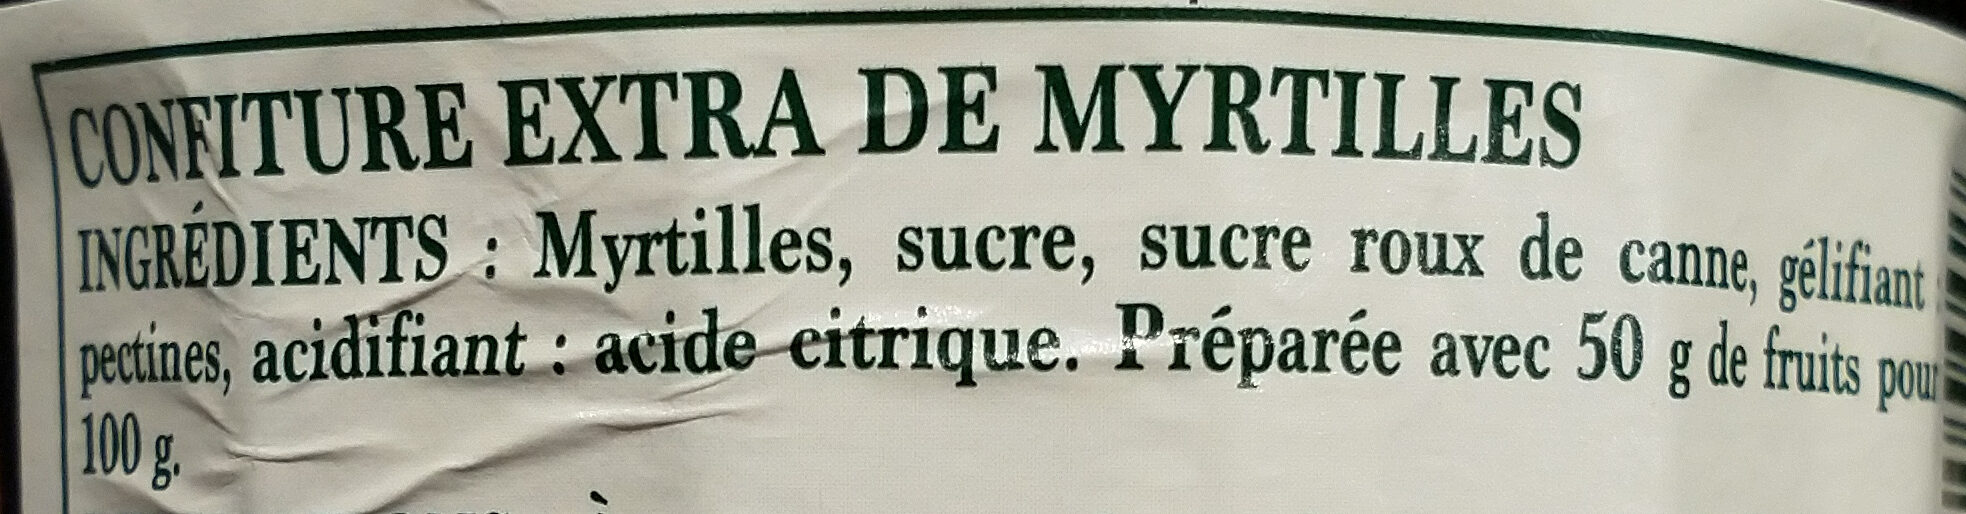 Confiture extra myrtilles - Ingredientes - fr